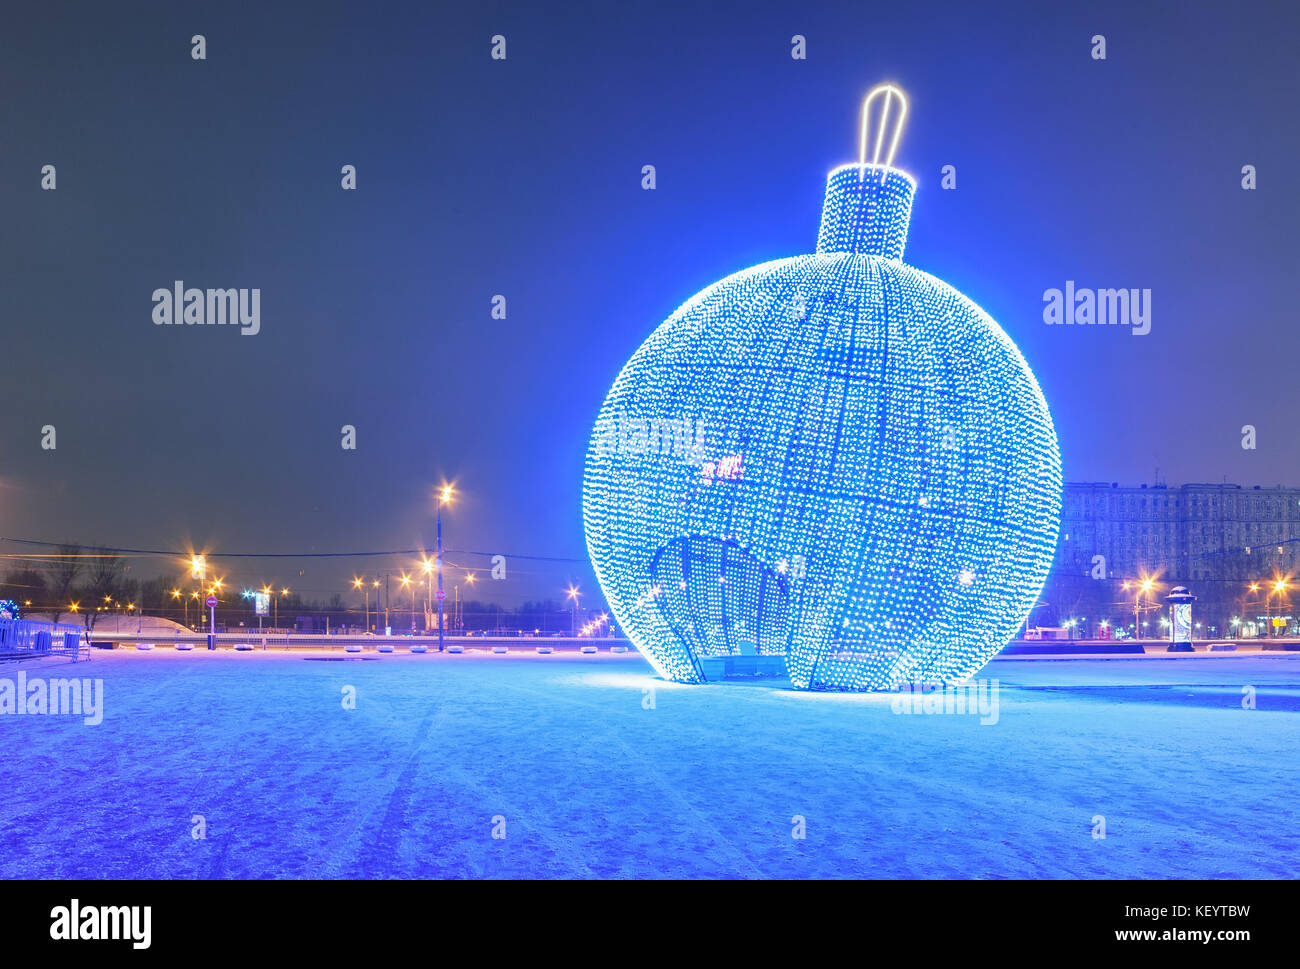 Boule de Noël bleu lumineux géant dans la rue avec de la neige Banque D'Images